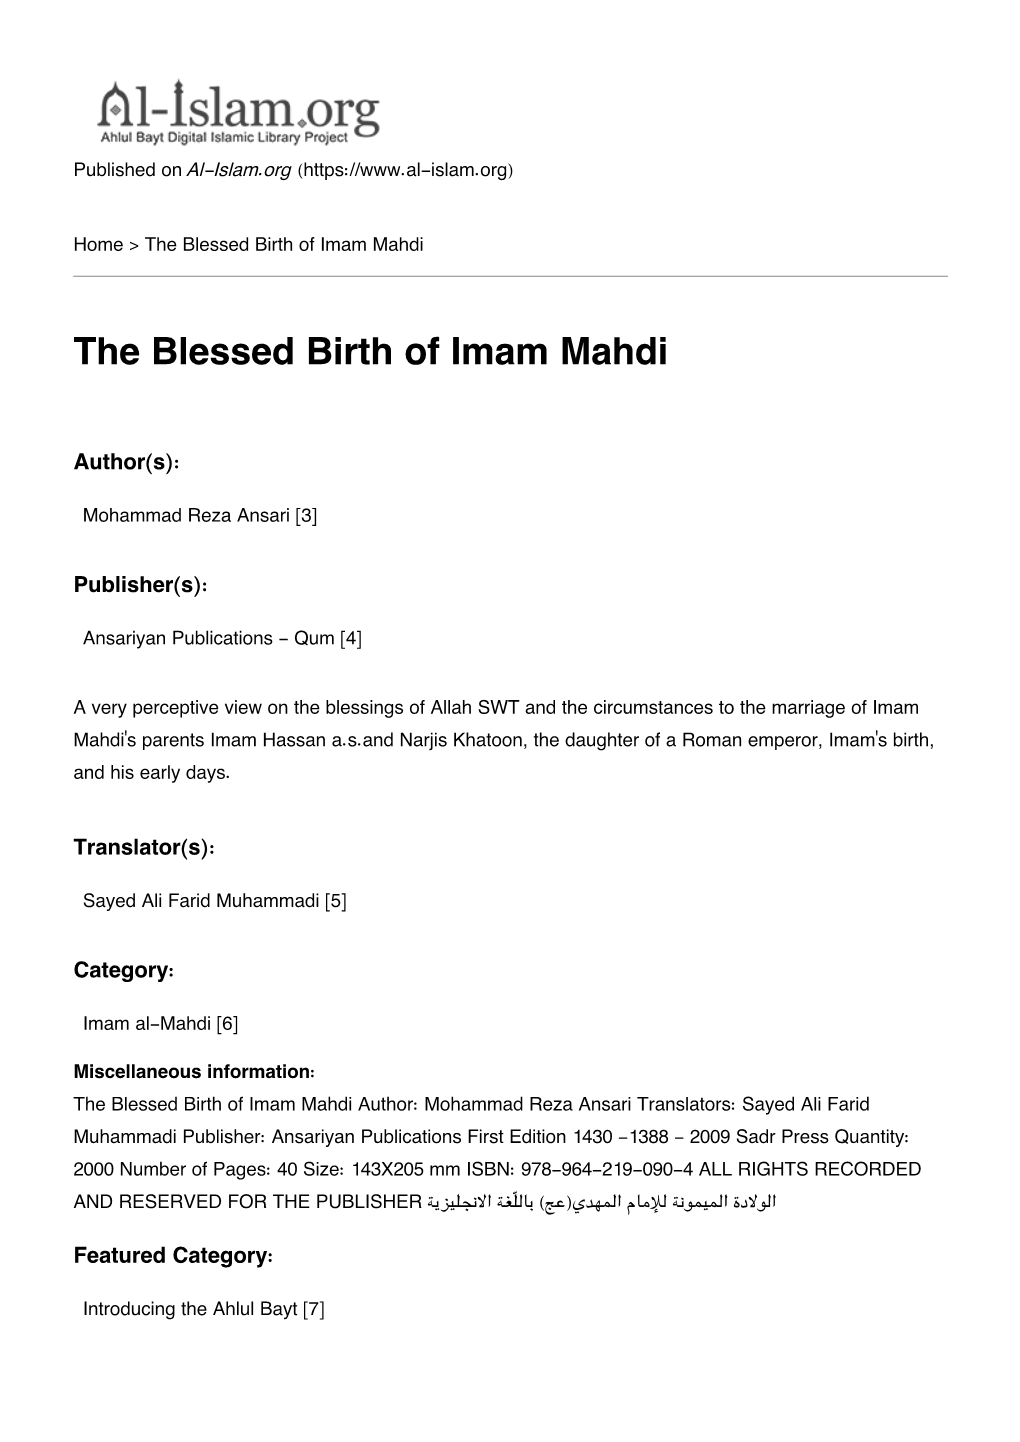 The Blessed Birth of Imam Mahdi